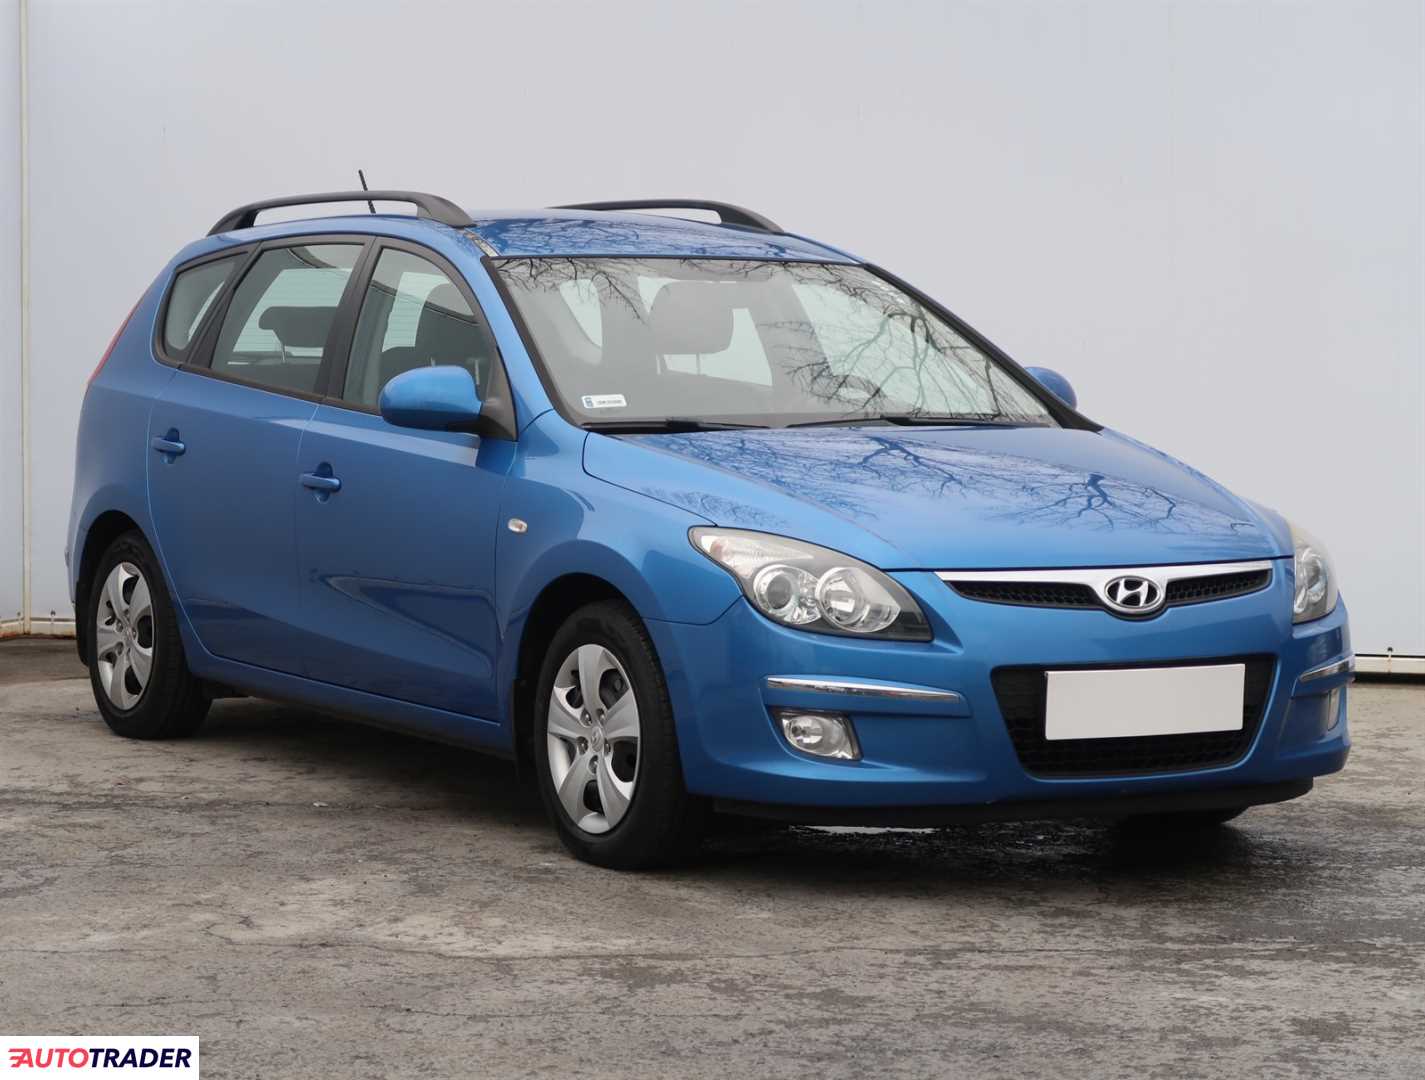 Hyundai i30 2009 1.6 124 KM